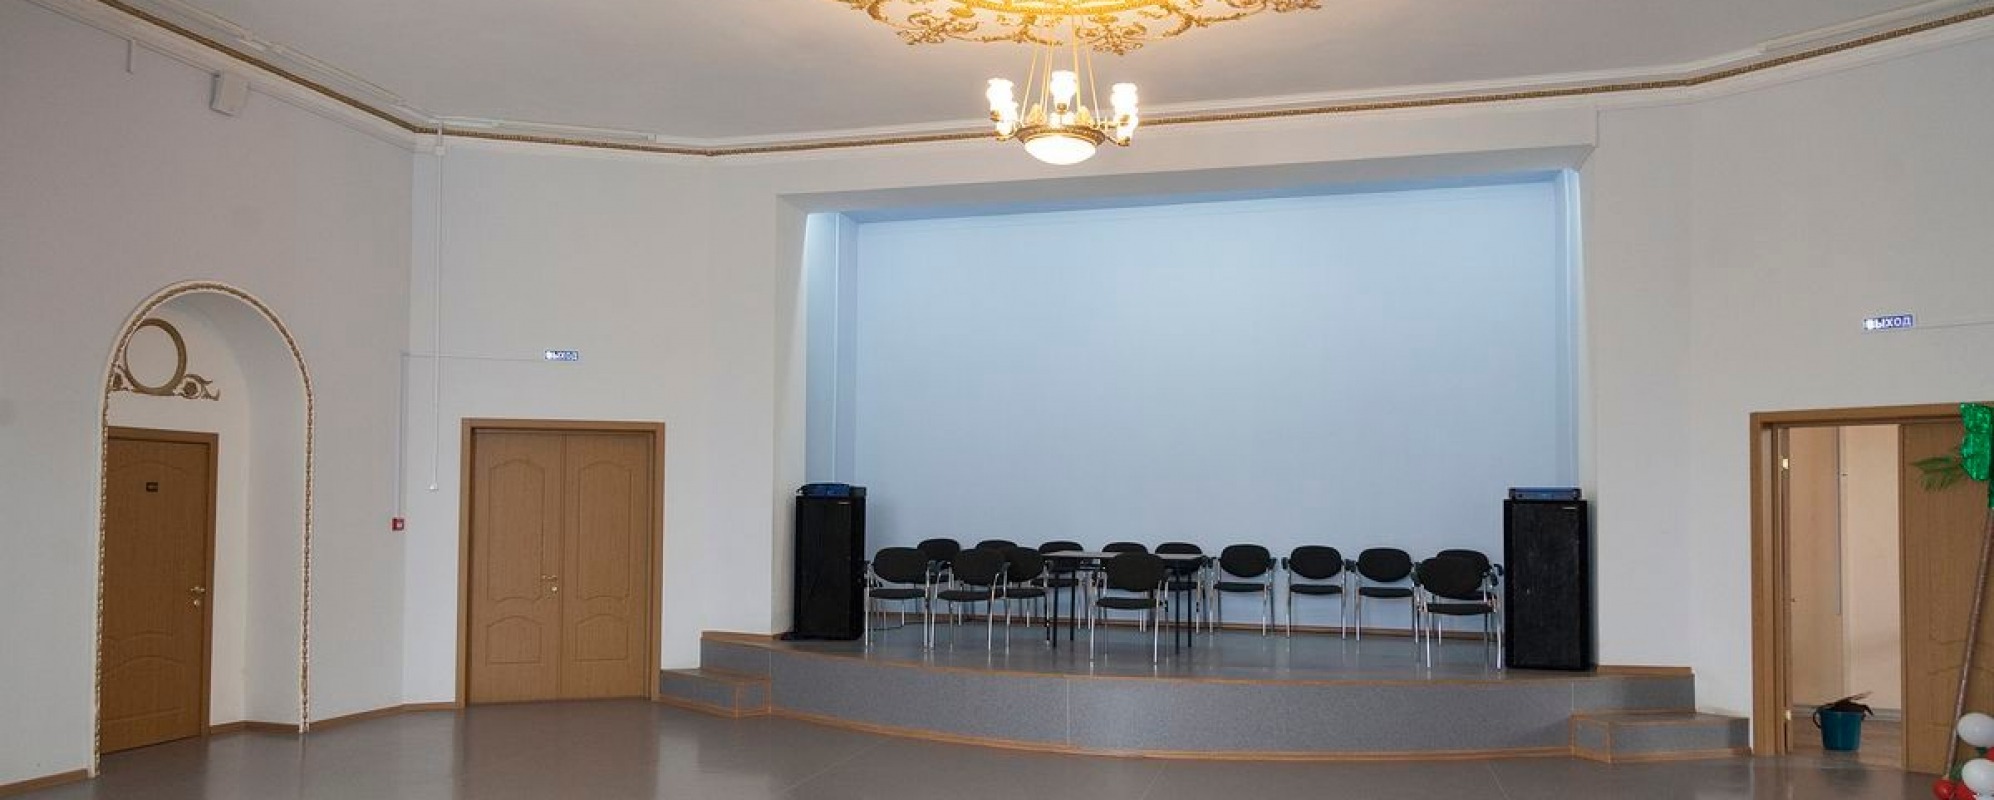 Фотографии концертного зала Малый зал ДК Нефтяник